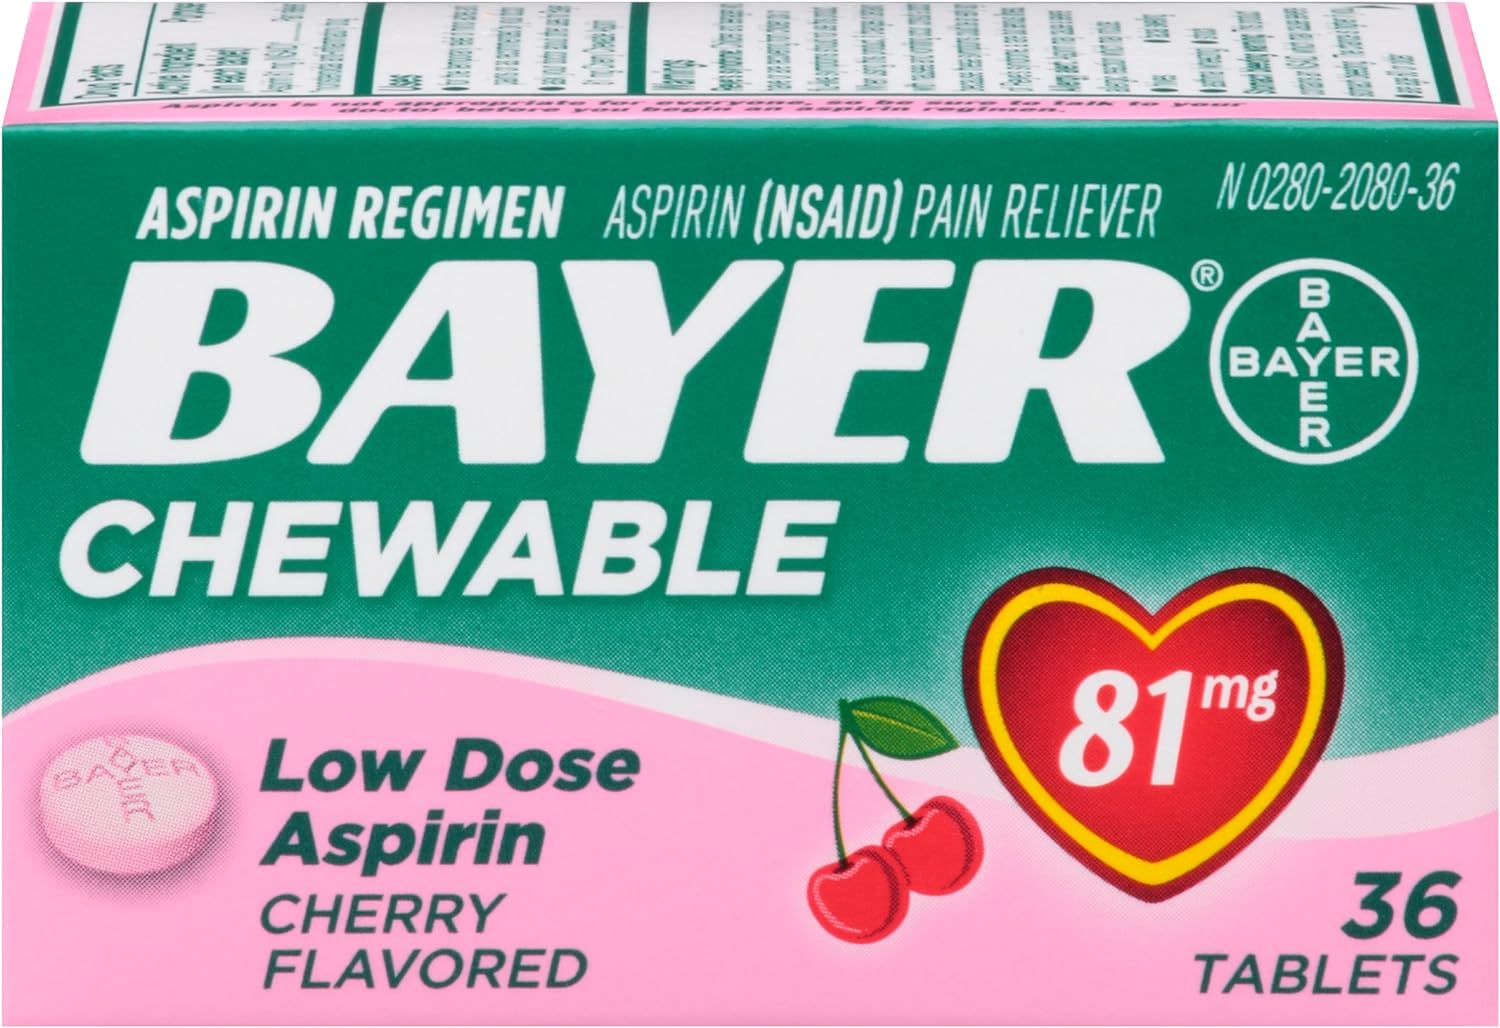 Bayer Aspirin Regimen, 81mg Ch…